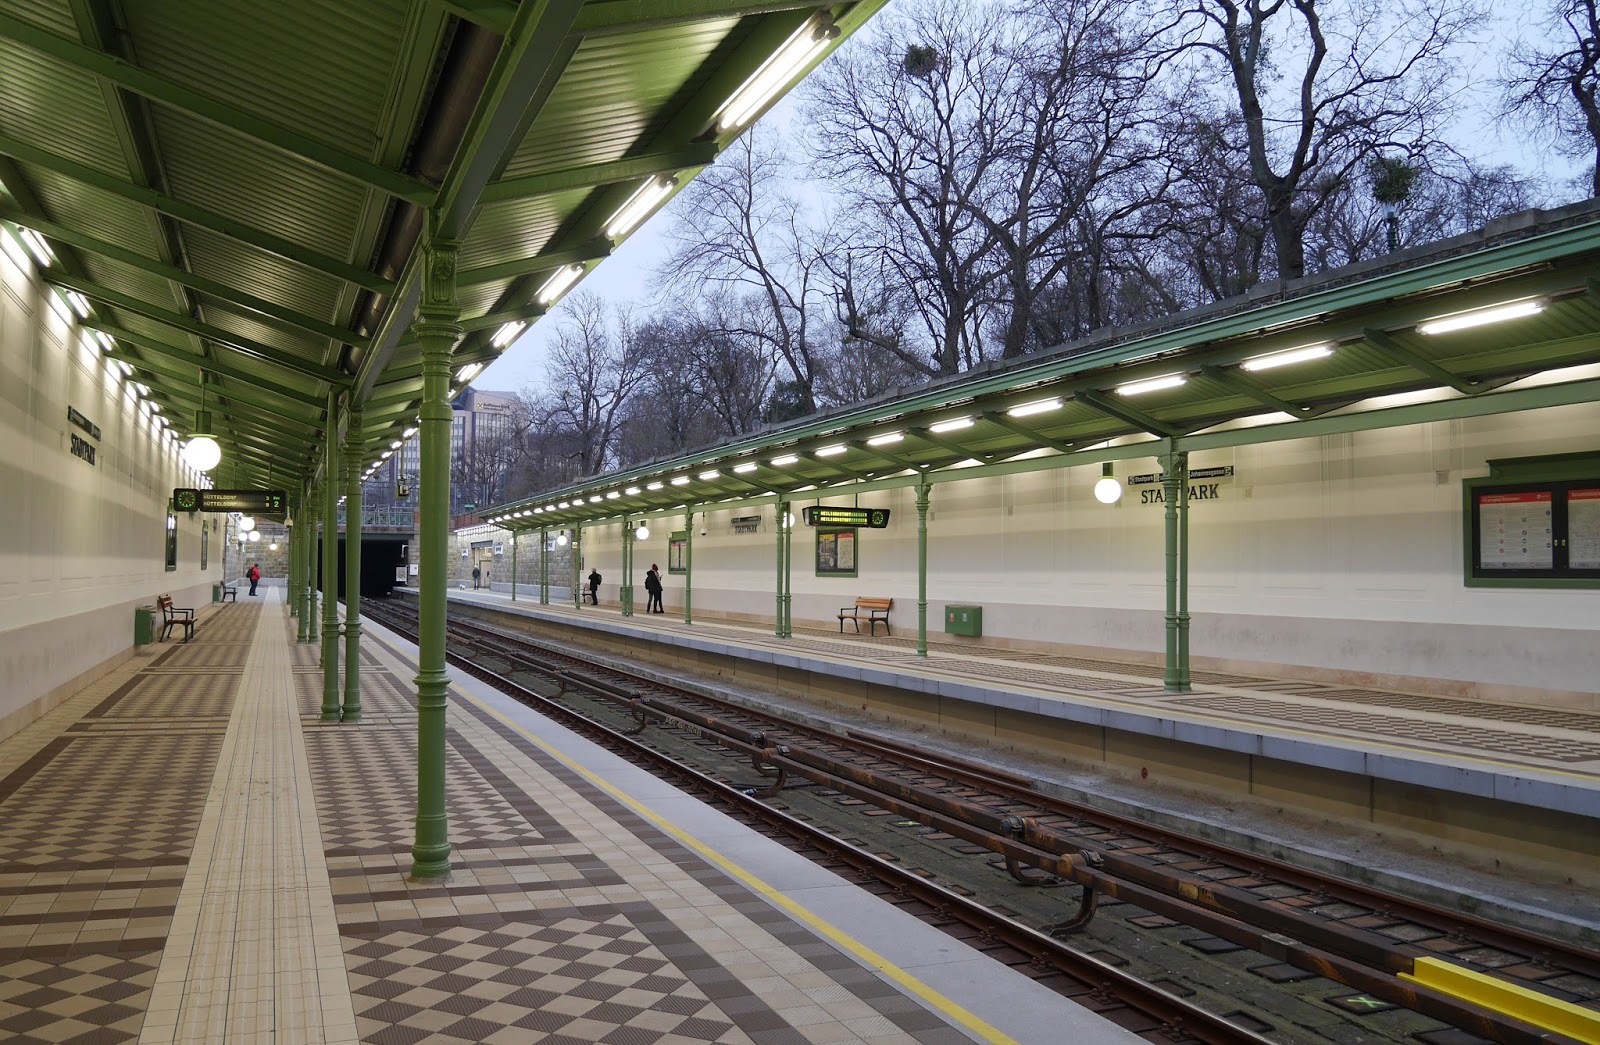 Stadtpark station in Vienna, Austria